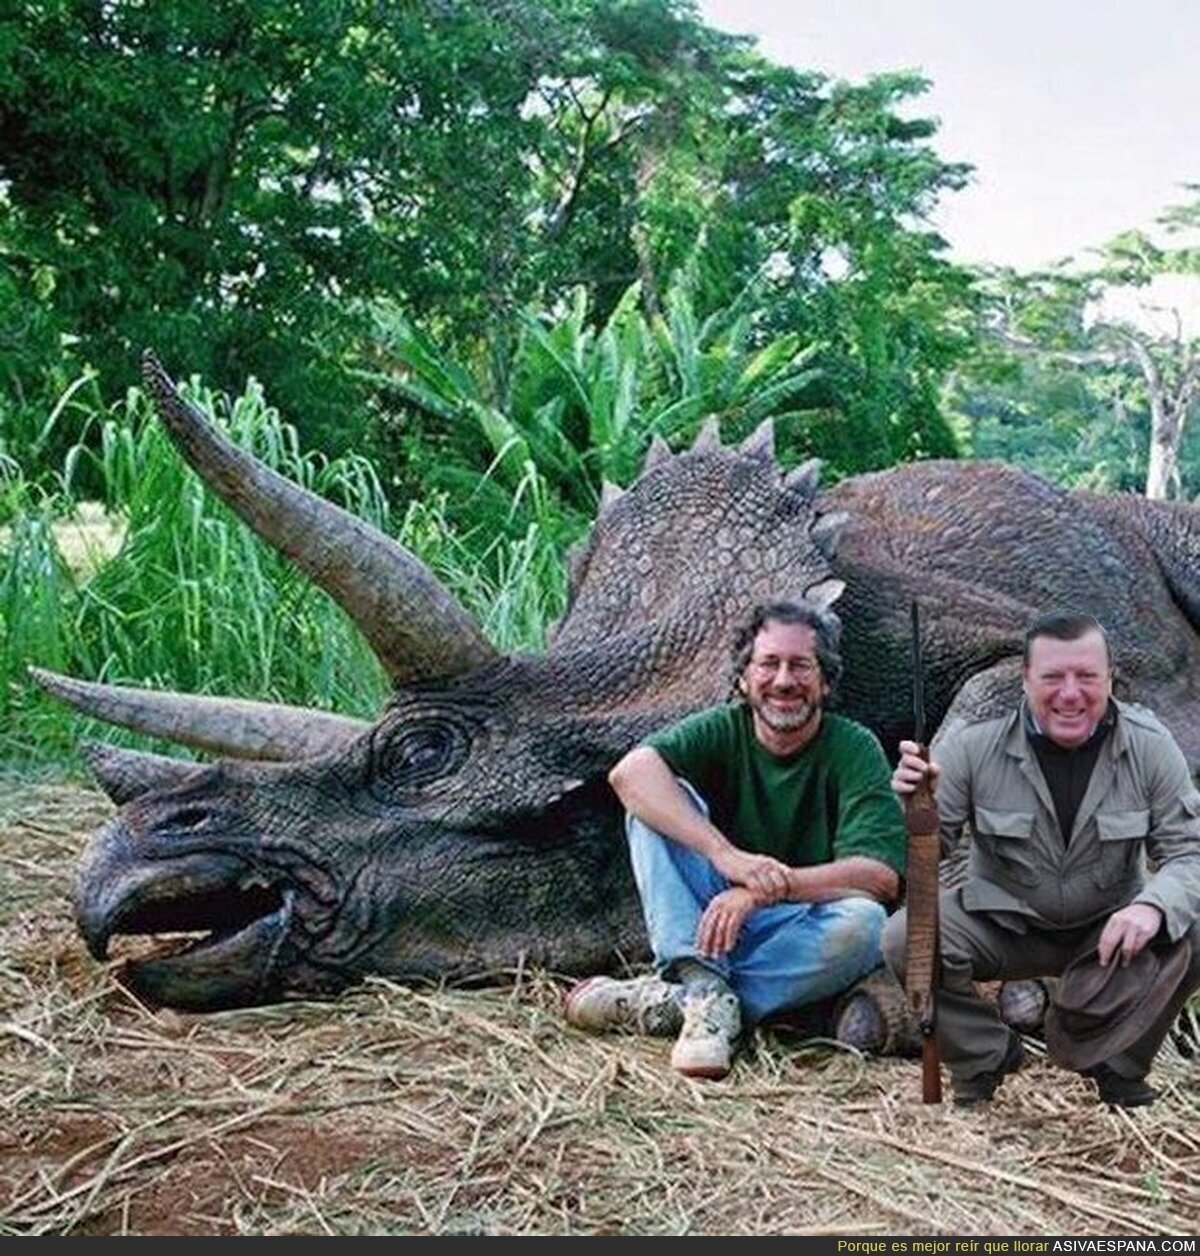 César Cadaval en Jurassic Park